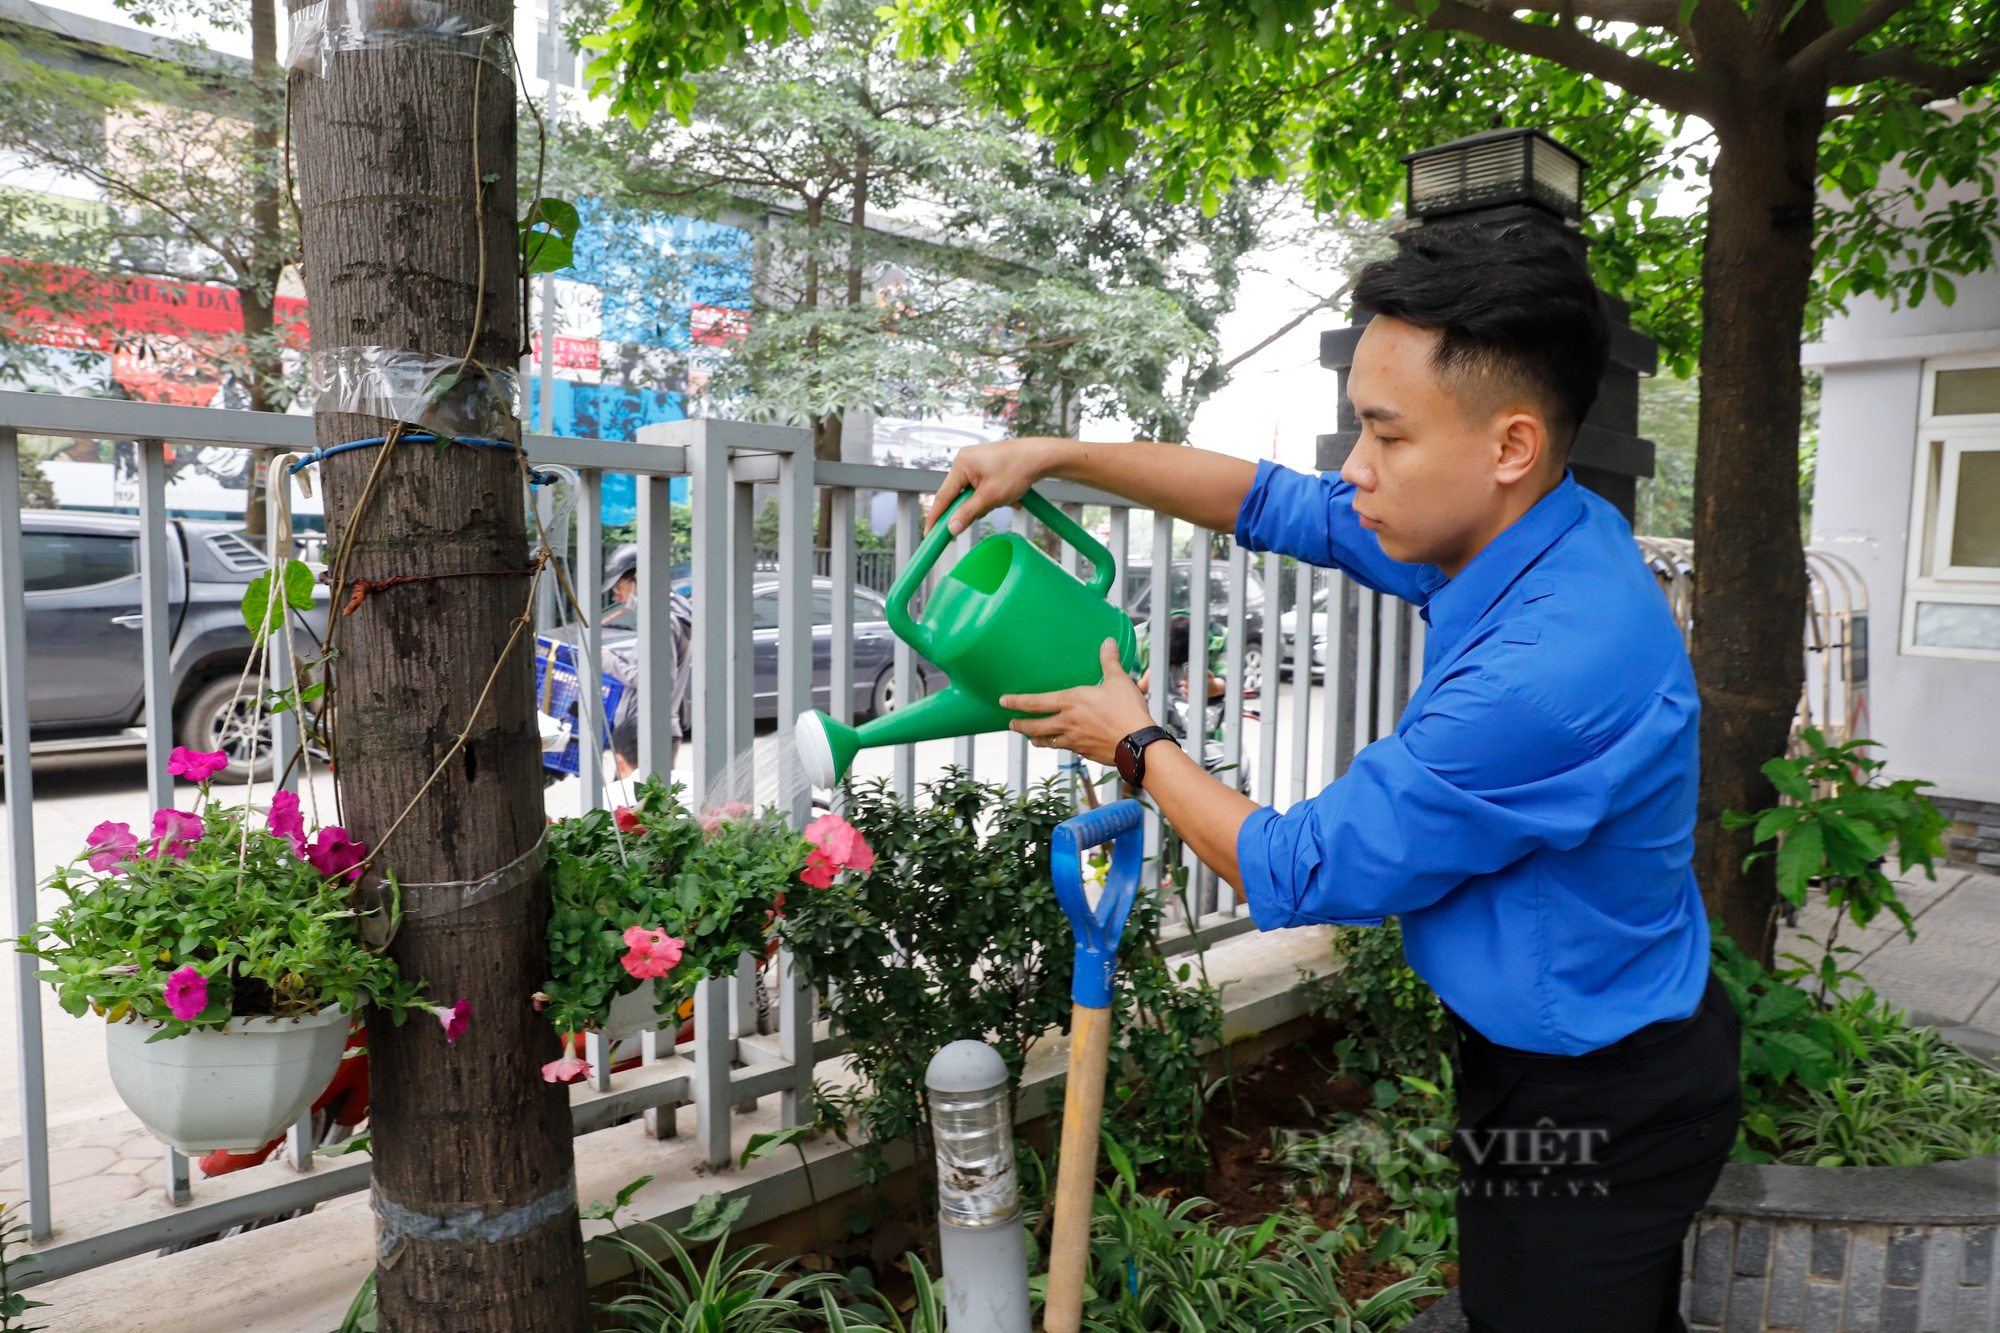 Tuổi trẻ Báo NTNN/Dân Việt chung tay vì môi trường cơ quan xanh-sạch-đẹp - Ảnh 7.